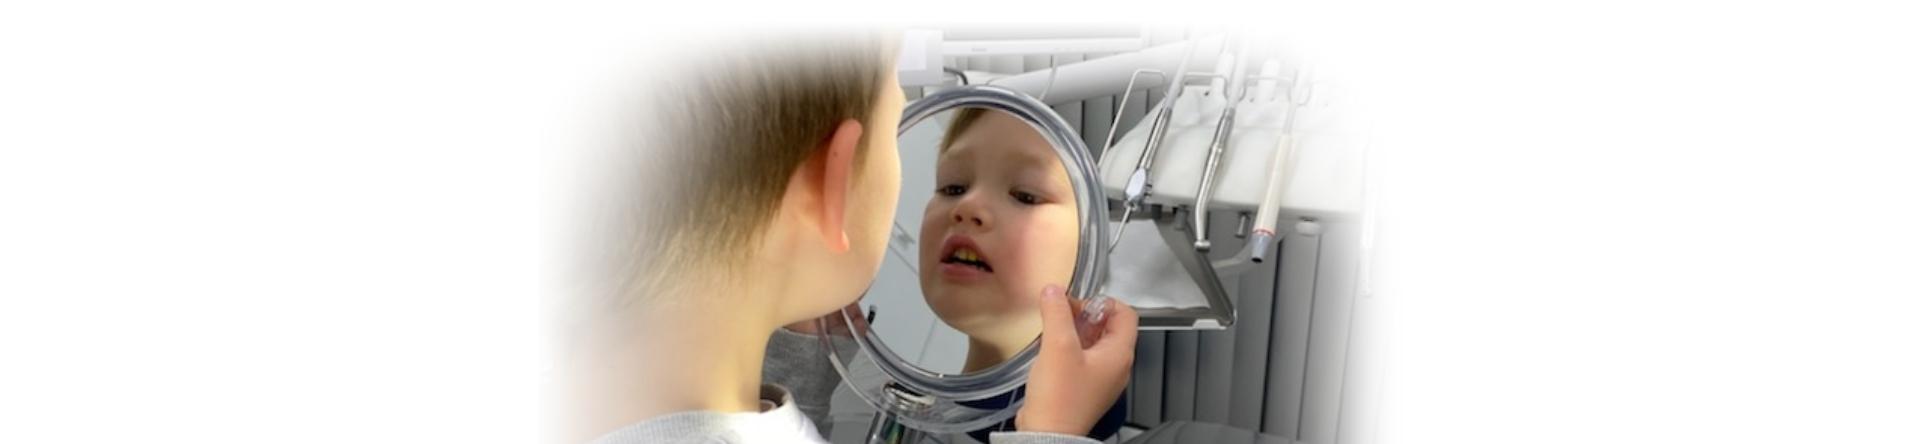 zdjęcie dziecka w lustrze